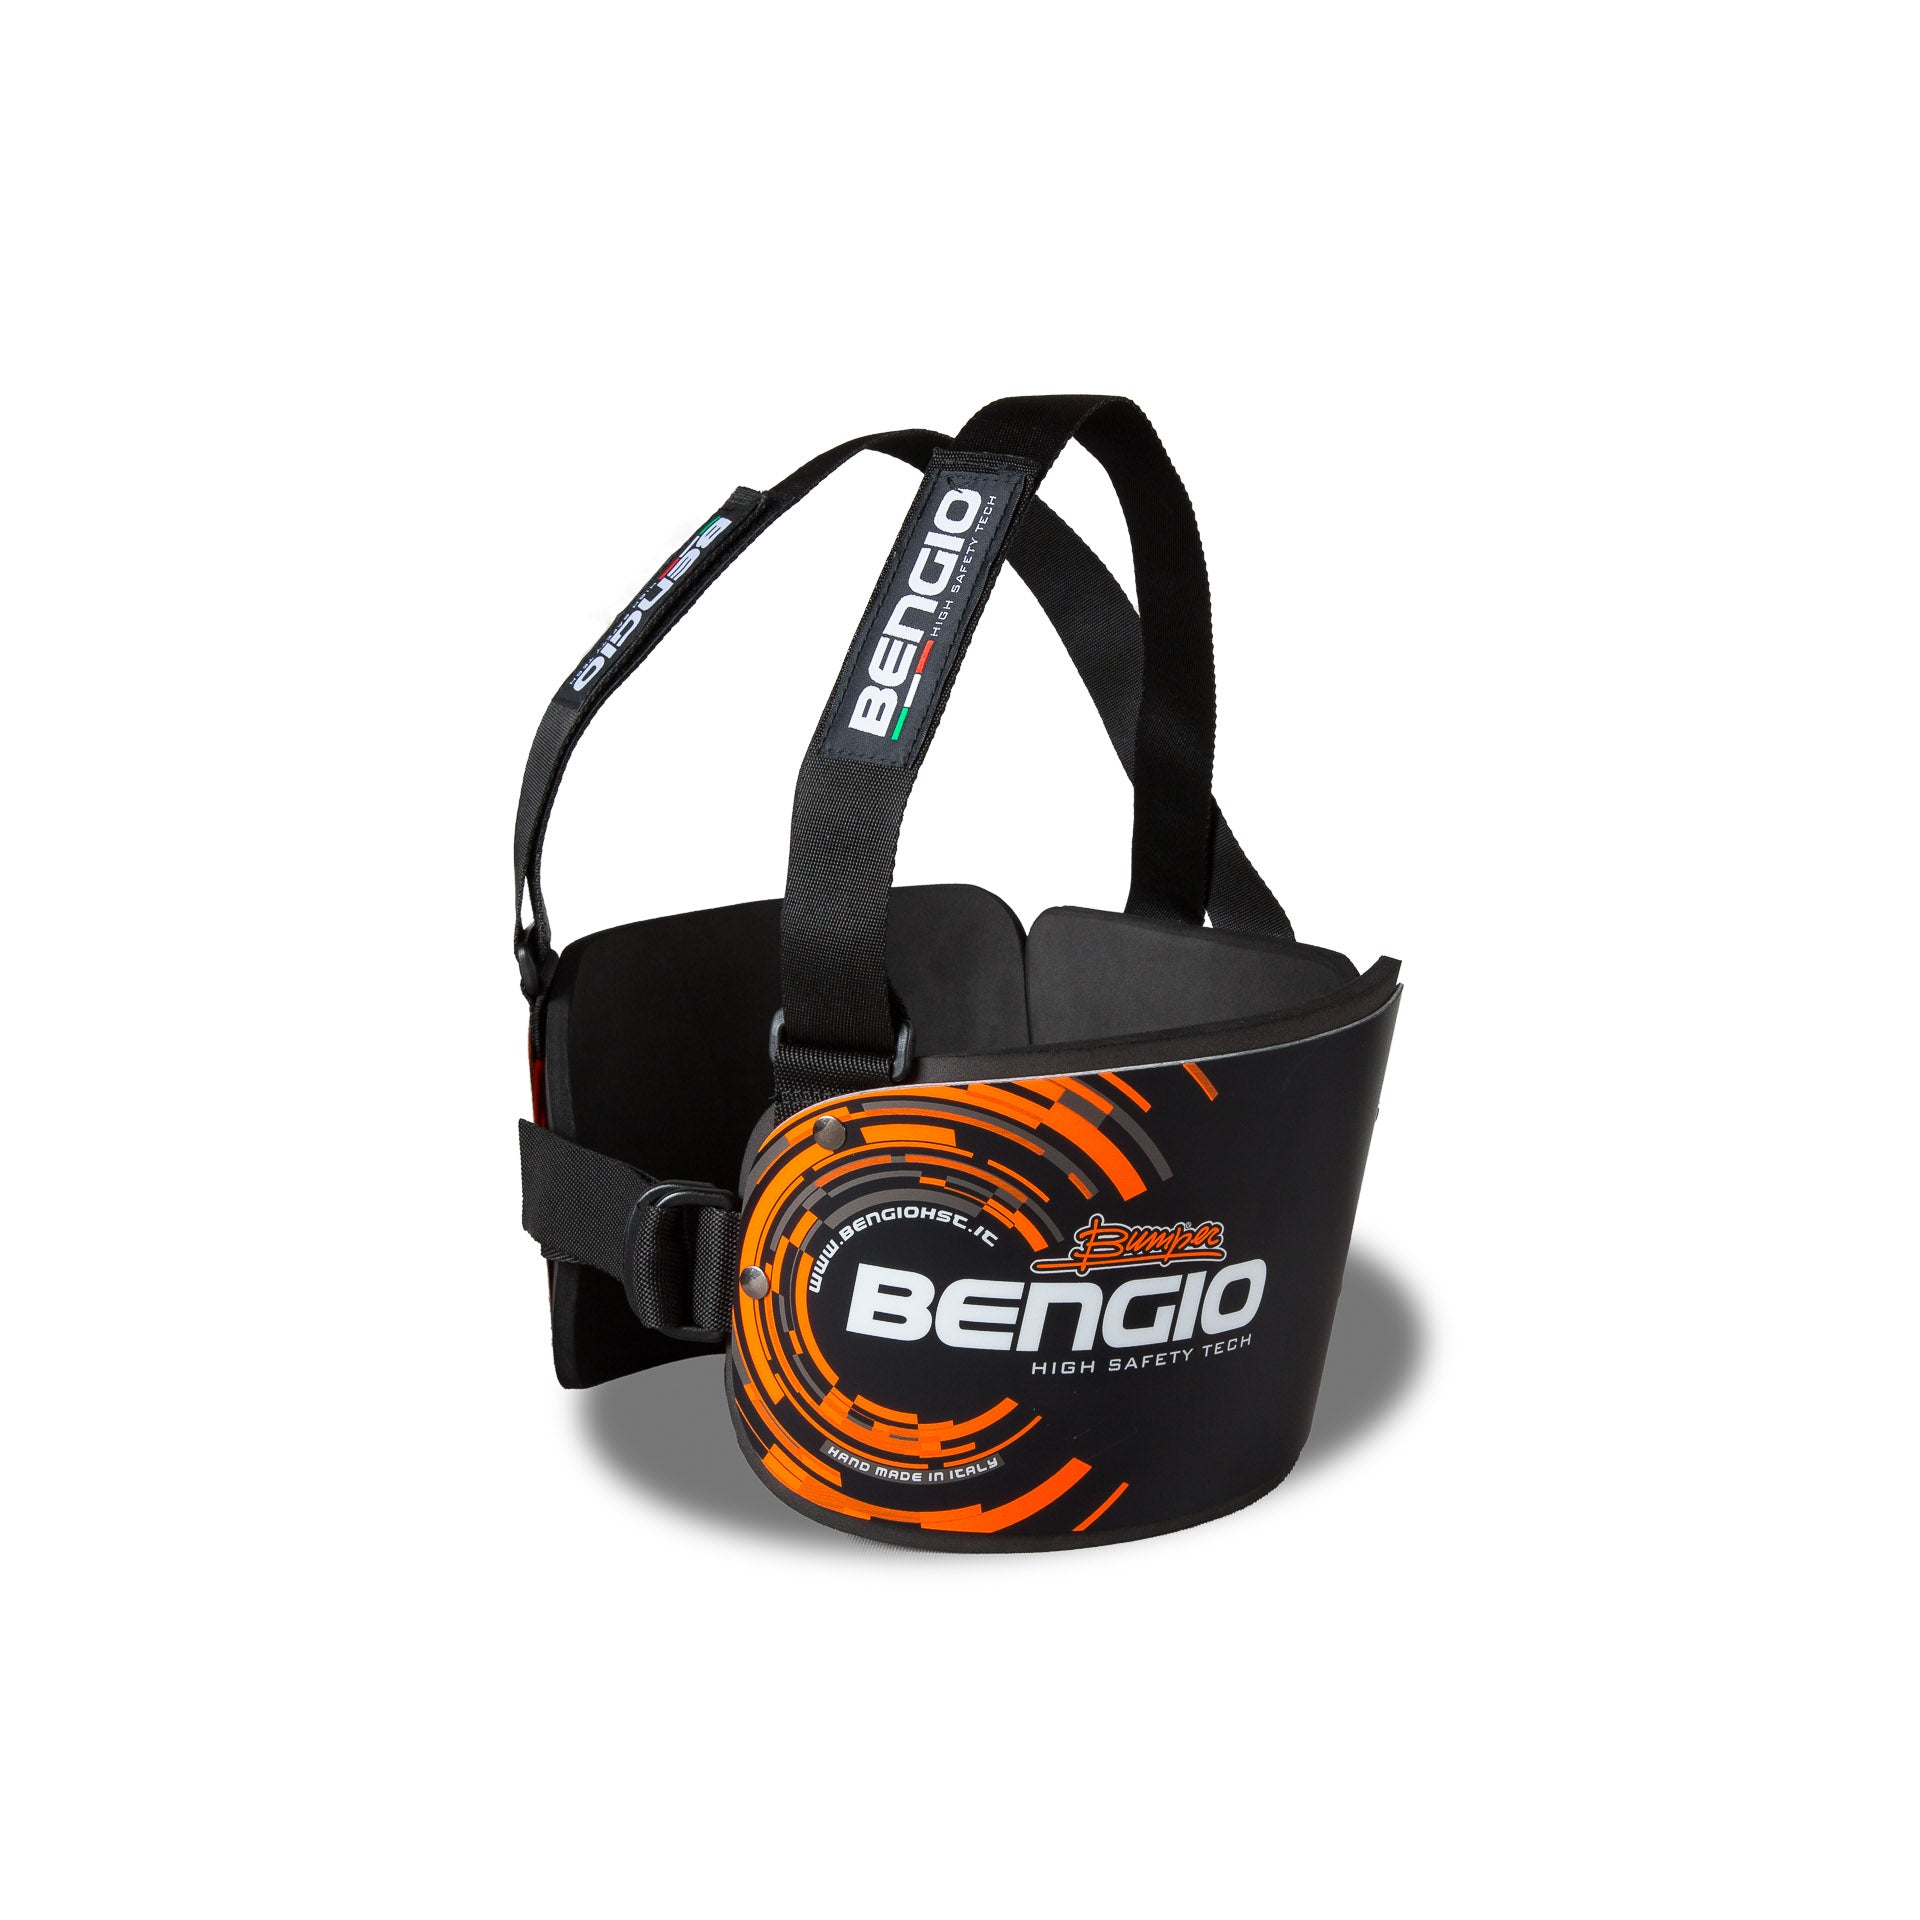 BENGIO STDMBO BUMPER Standard Захист ребер для картингу, чорний/помаранчевий, розмір M Photo-1 